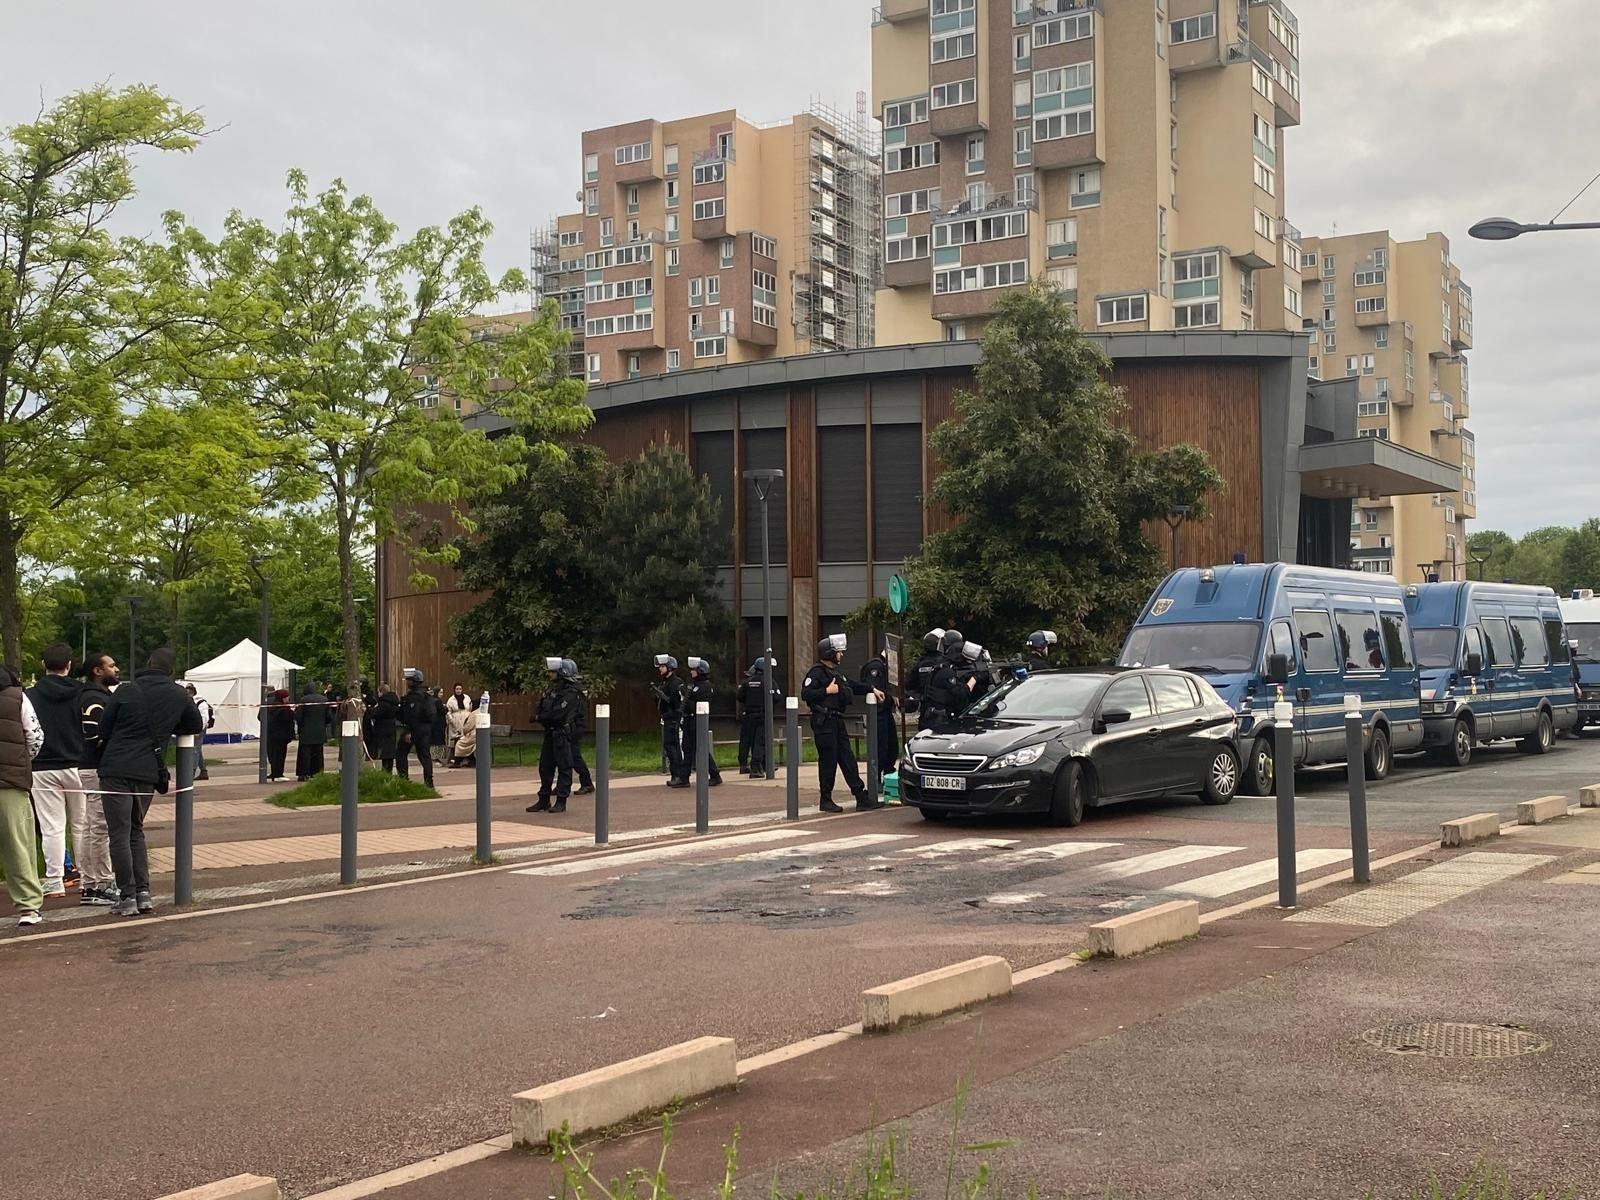 Sevran, le 5 mai. Les policiers se sont déployés en nombre dans la Cité basse, théâtre d'un double homicide dimanche en fin d'après-midi. LP/Hélène Haus